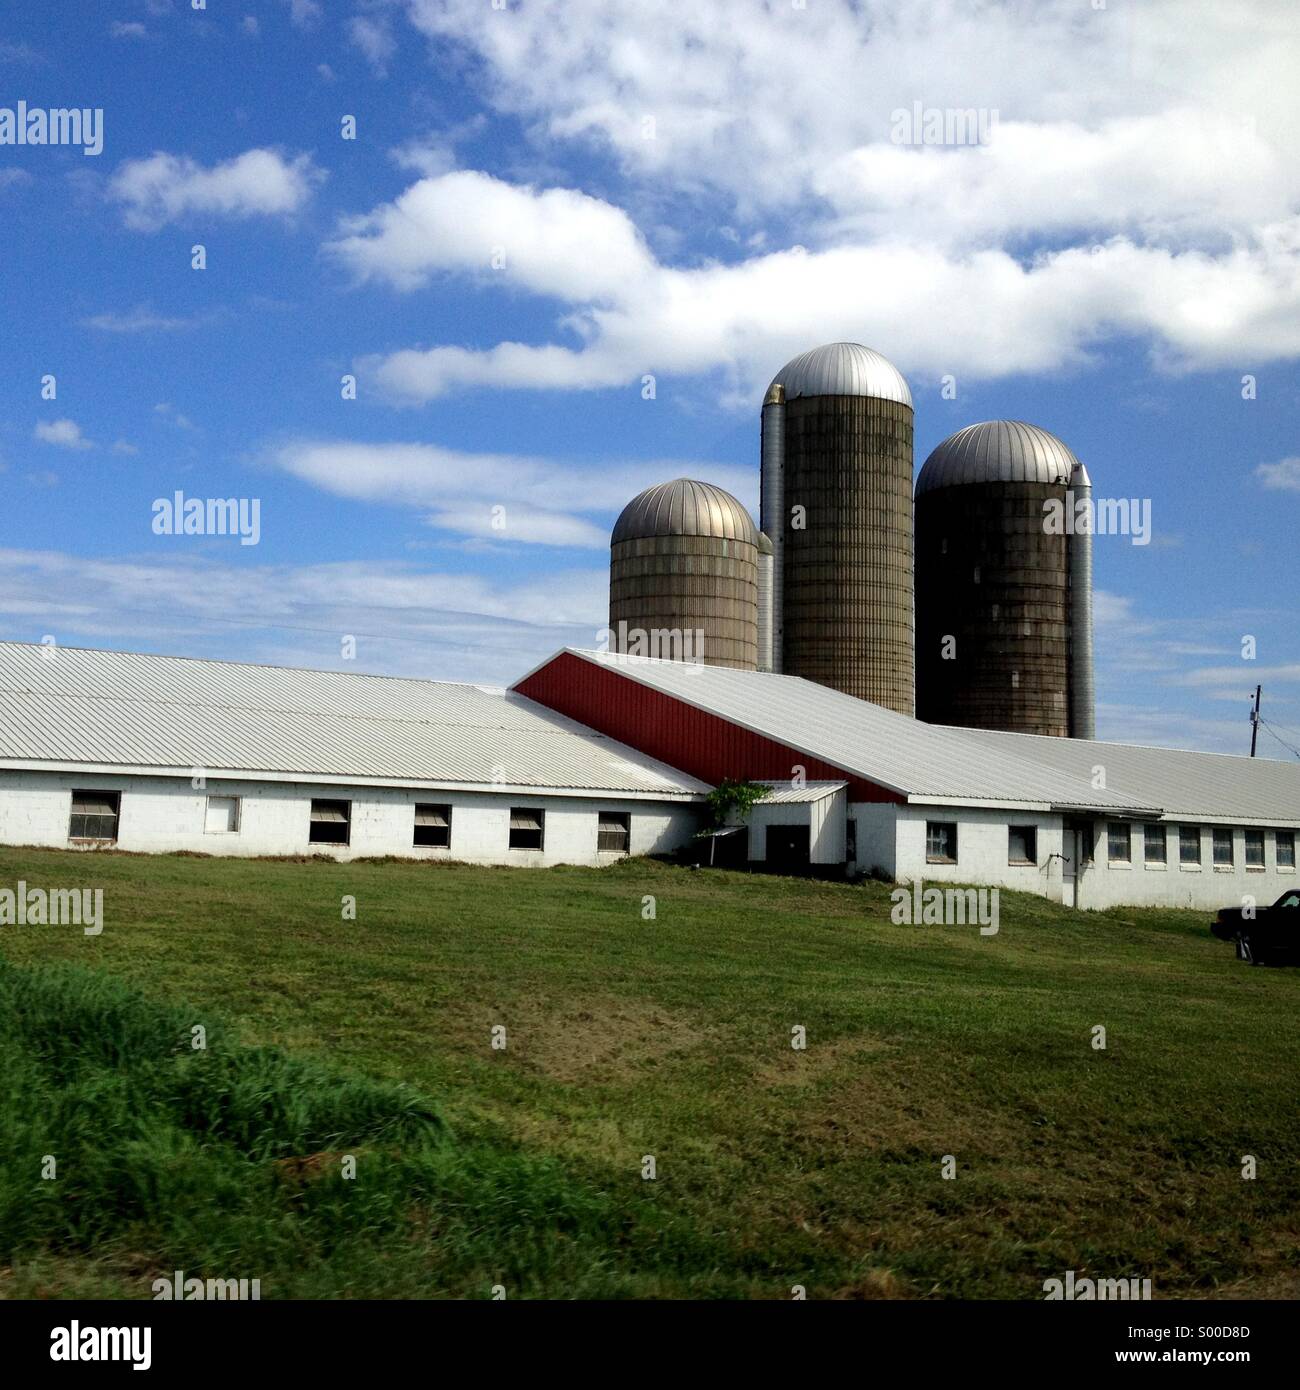 Farm buildings on a sunny summer day Stock Photo